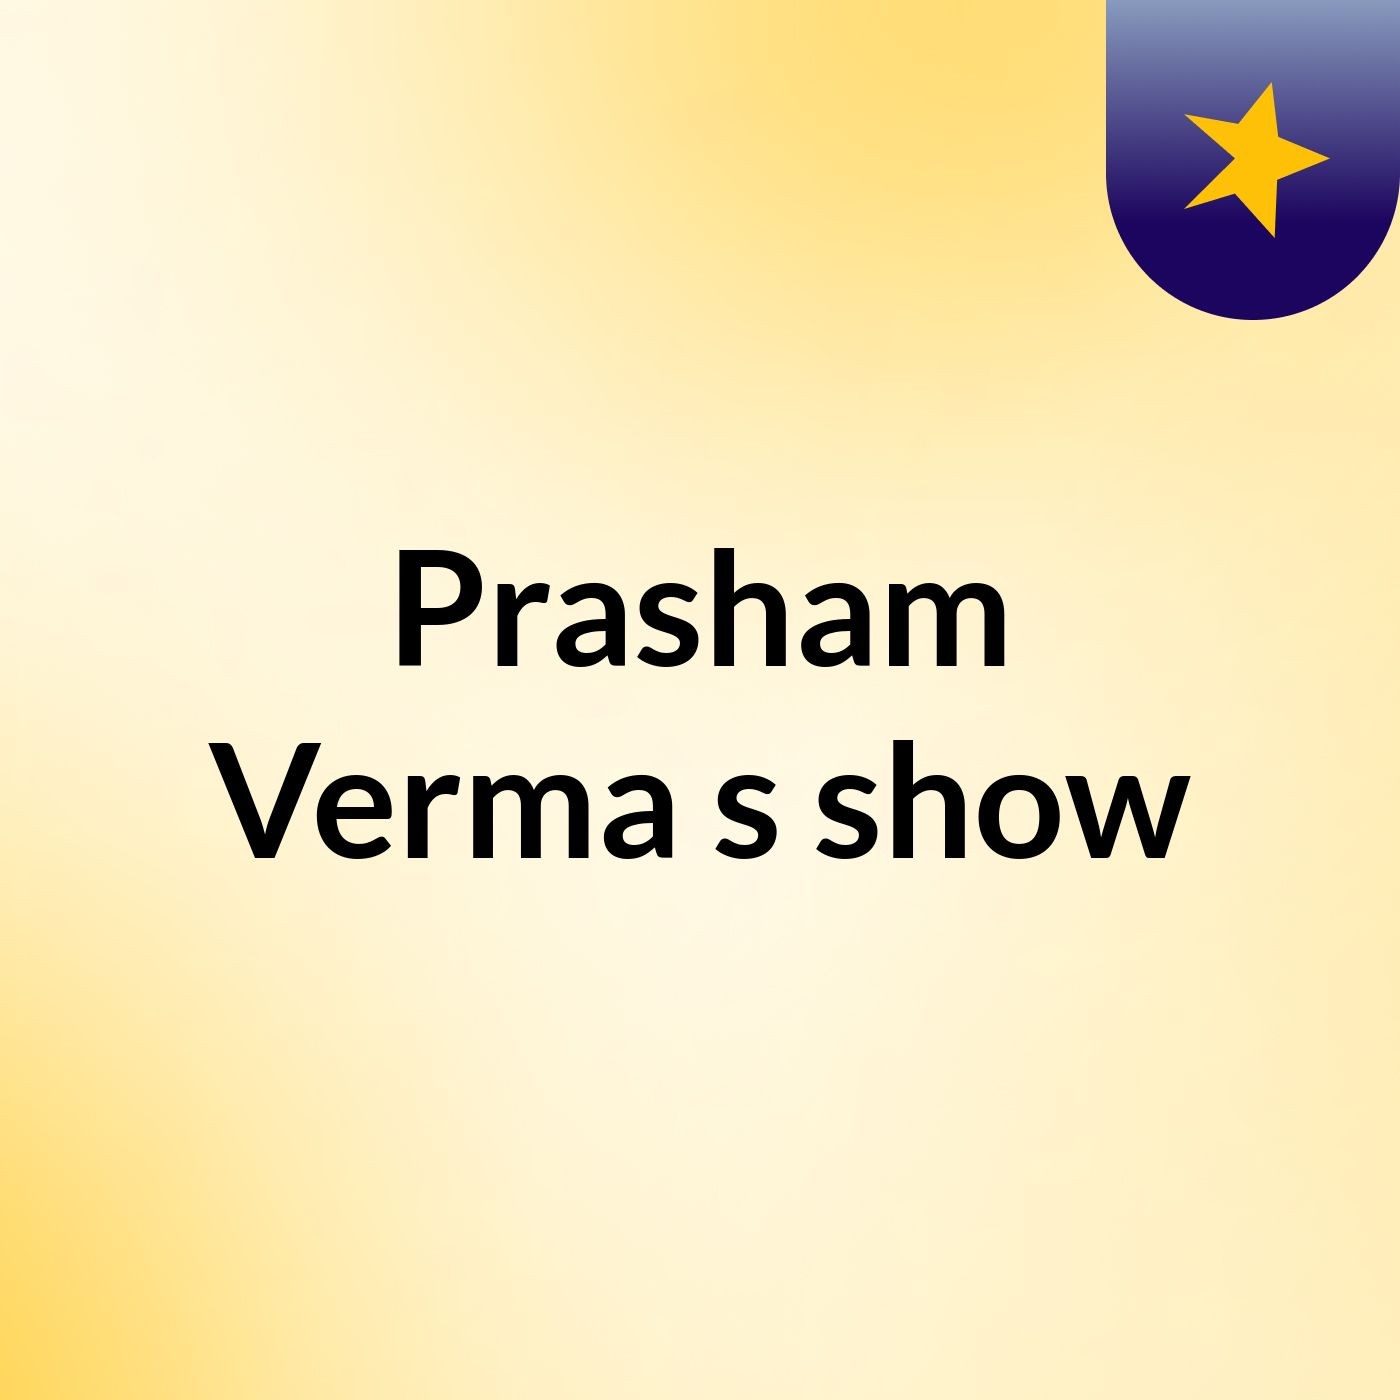 Prasham Verma's show